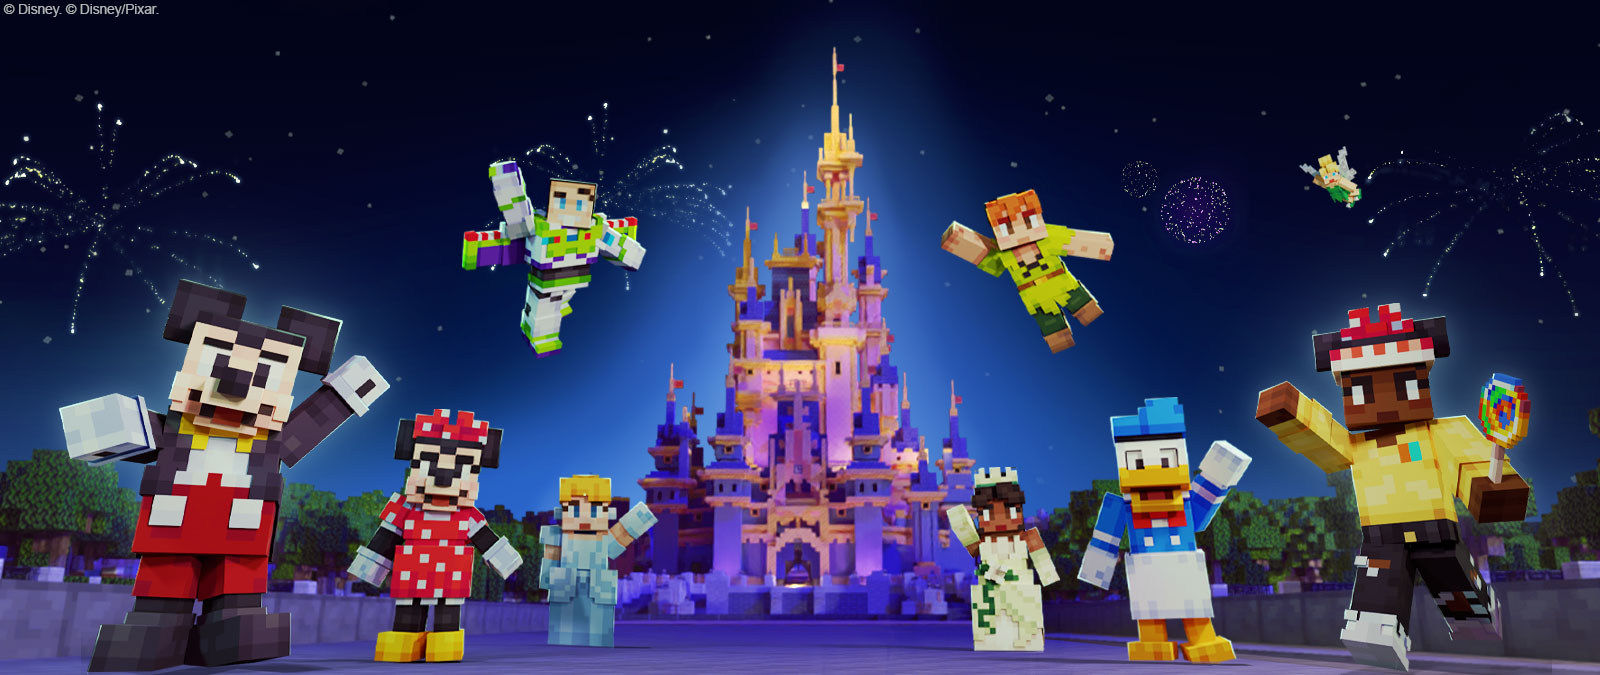 Myszka Miki, Myszka Minnie, Buzz Astral, Kopciuszek, Piotruś Pan, Tiana, Kaczor Donald, Dzwoneczek i inna postać w stylu Minecraft przed zamkiem Disney